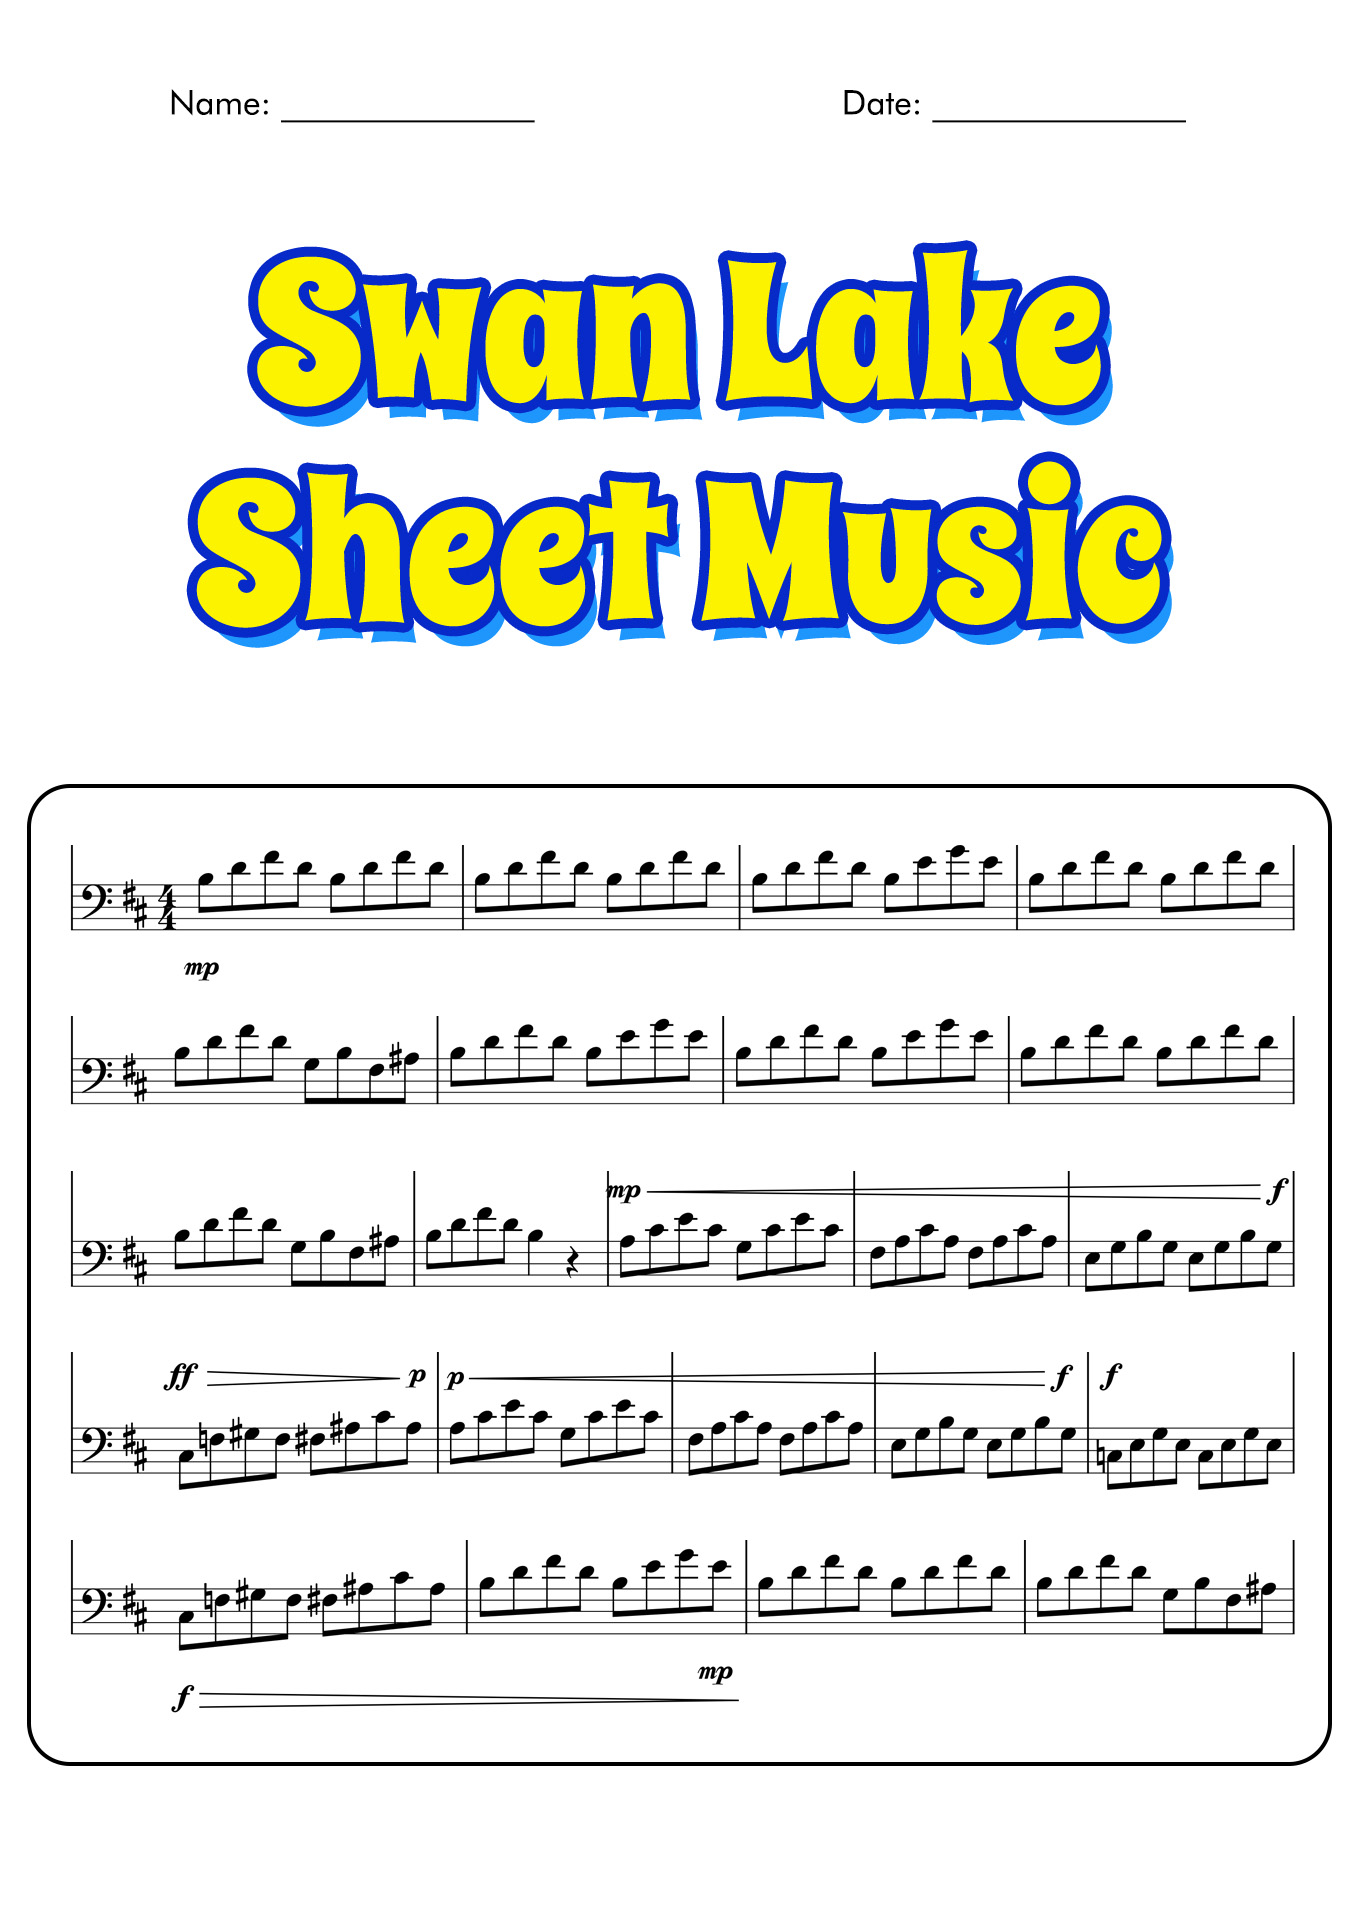 Swan Lake Sheet Music Image